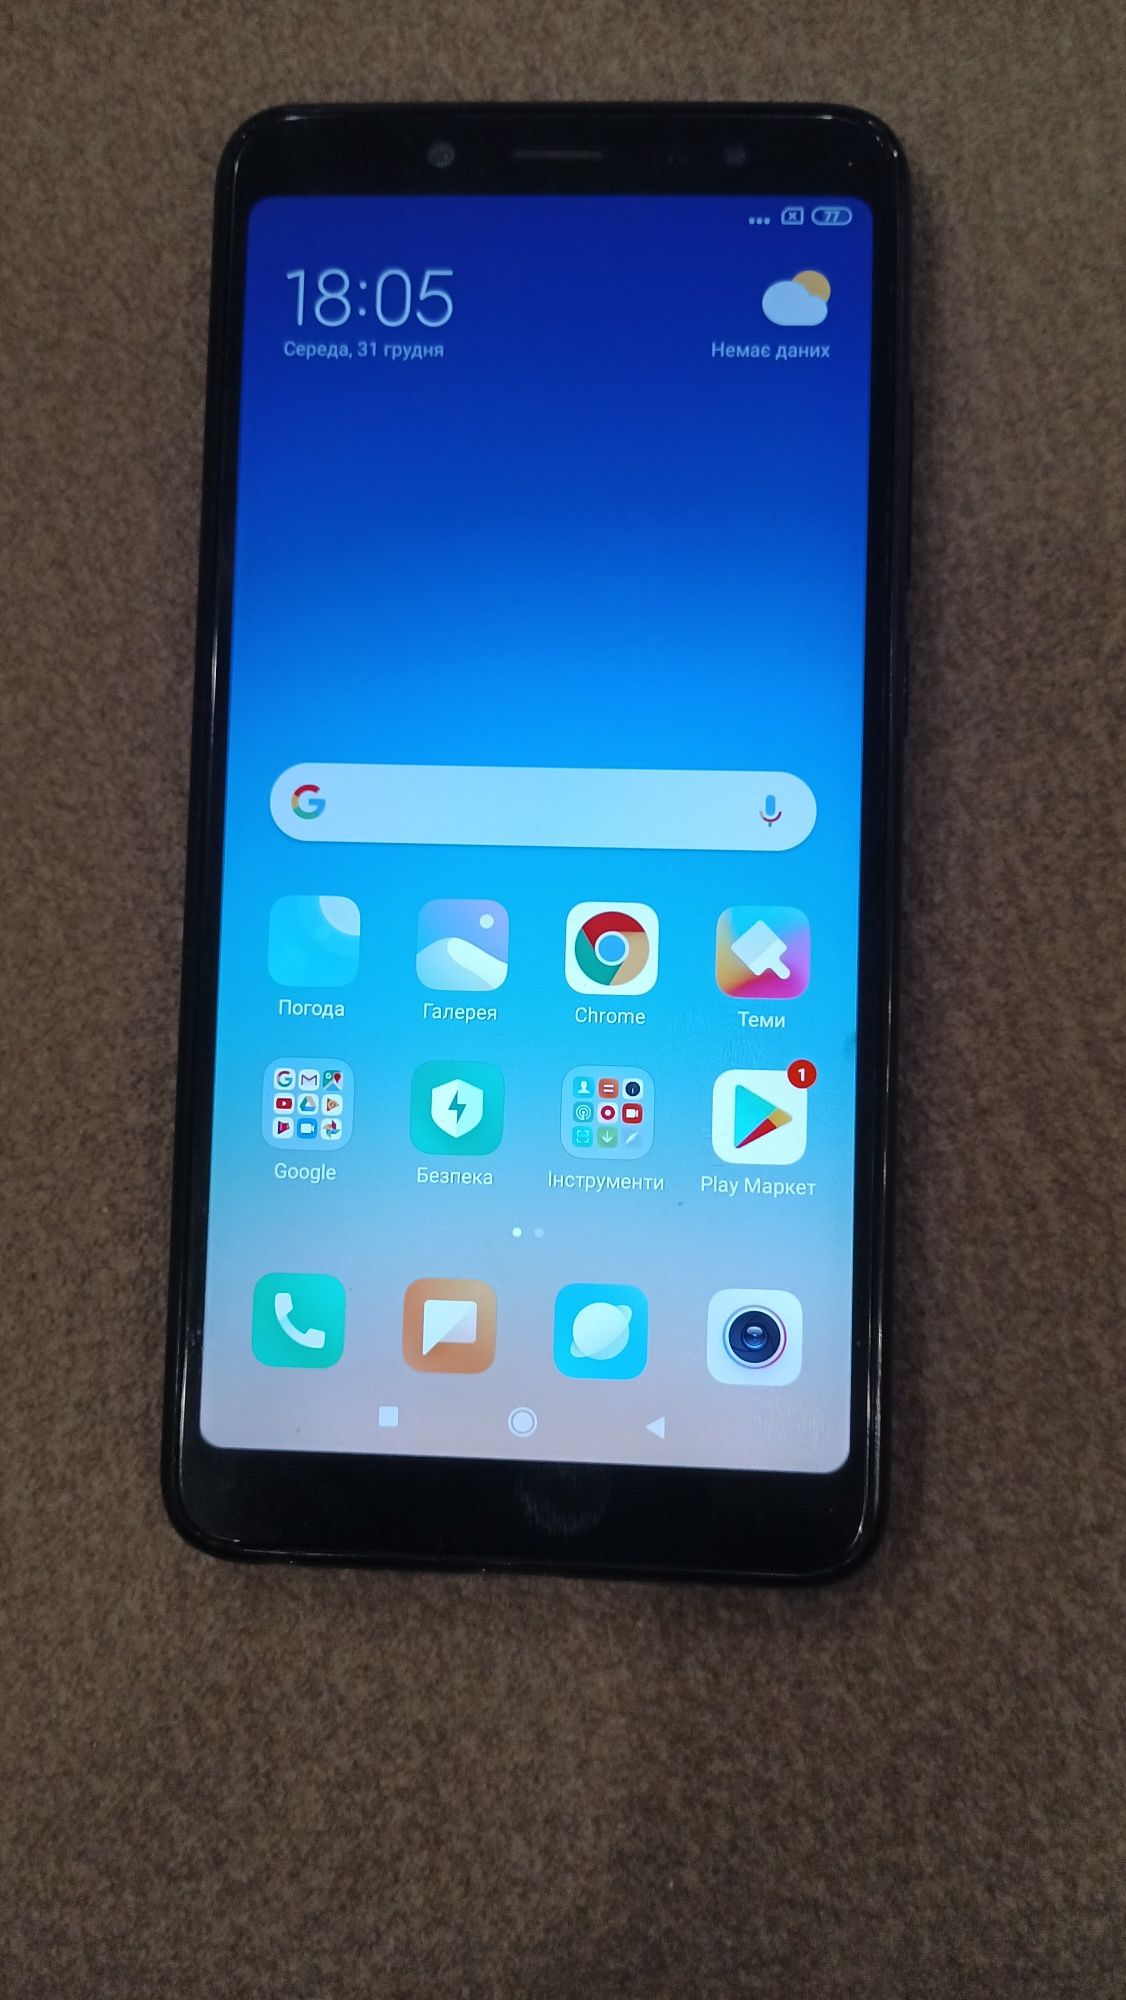 Xiaomi Redmi note 5